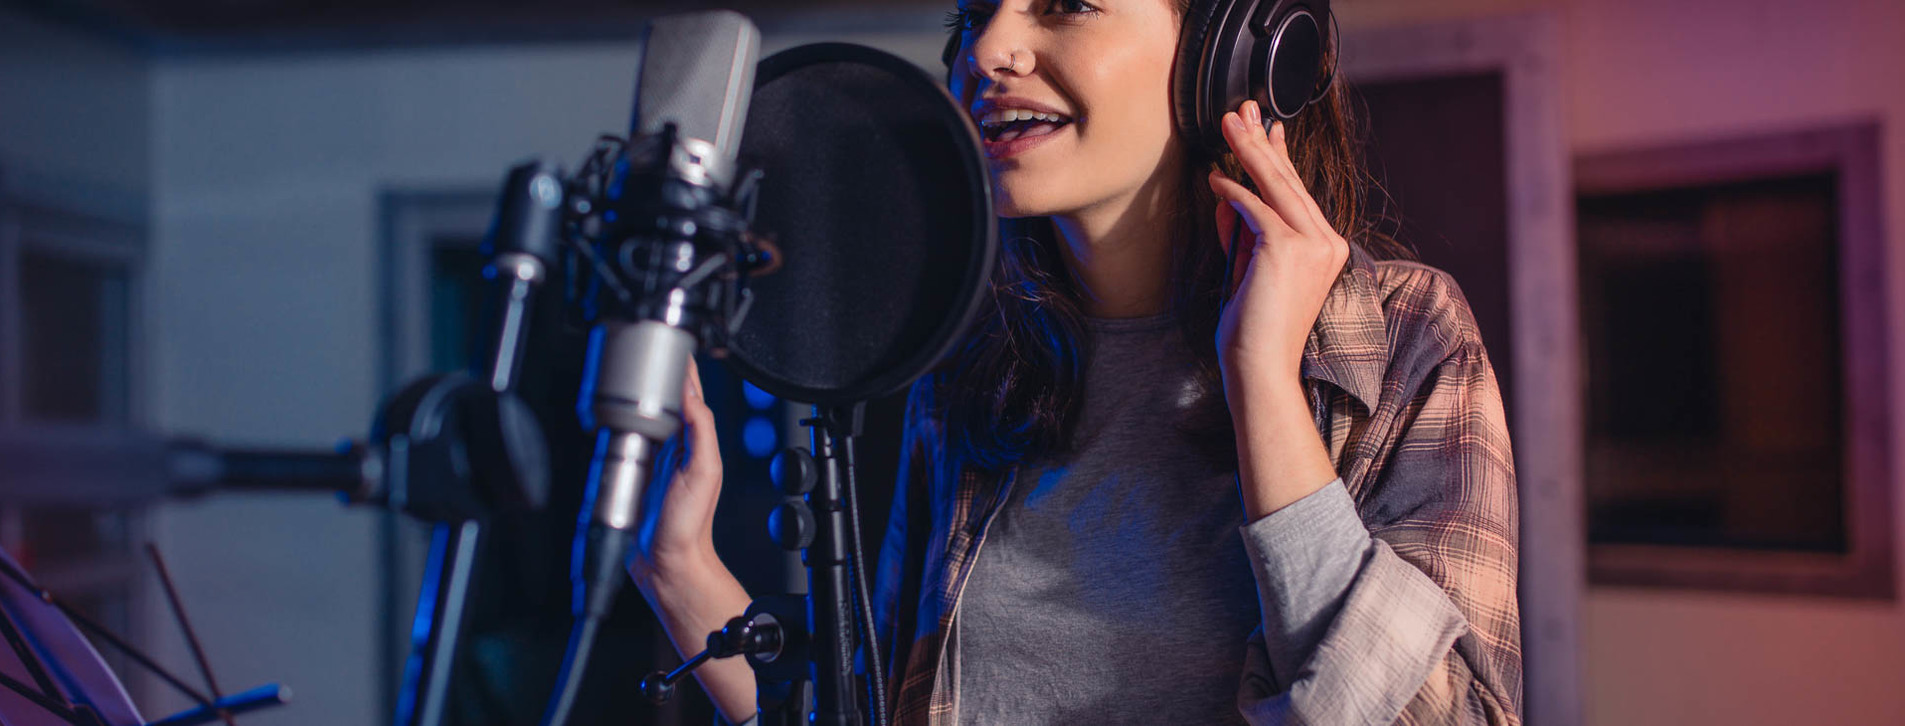 Уроки вокала: как развить свой голос и стать лучшим певцом!